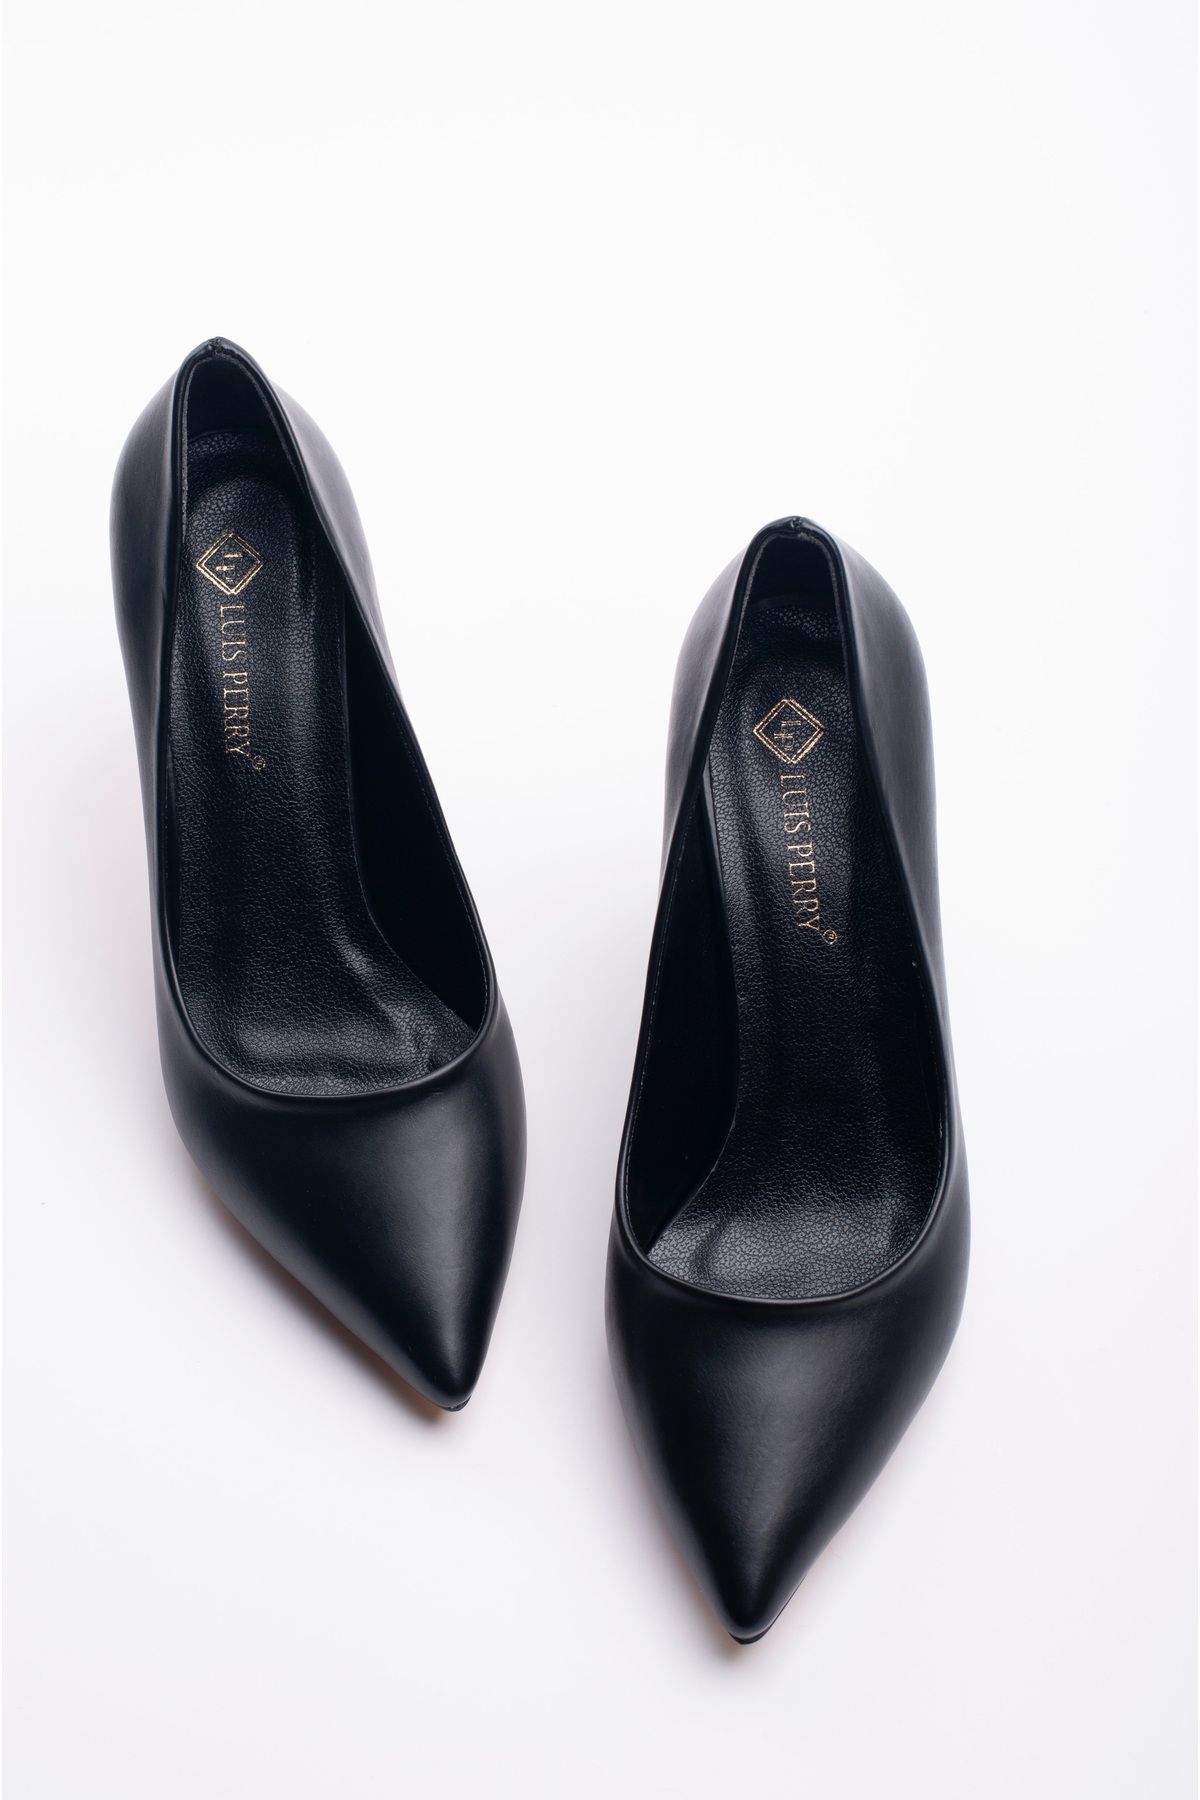 LuisPerry Siyah Renk Topuklu Ayakkabı Kadeh Topuklu Ayakkabı Günlük Ayakkabı Siyah Stiletto Yeni Sezon 9 Cm